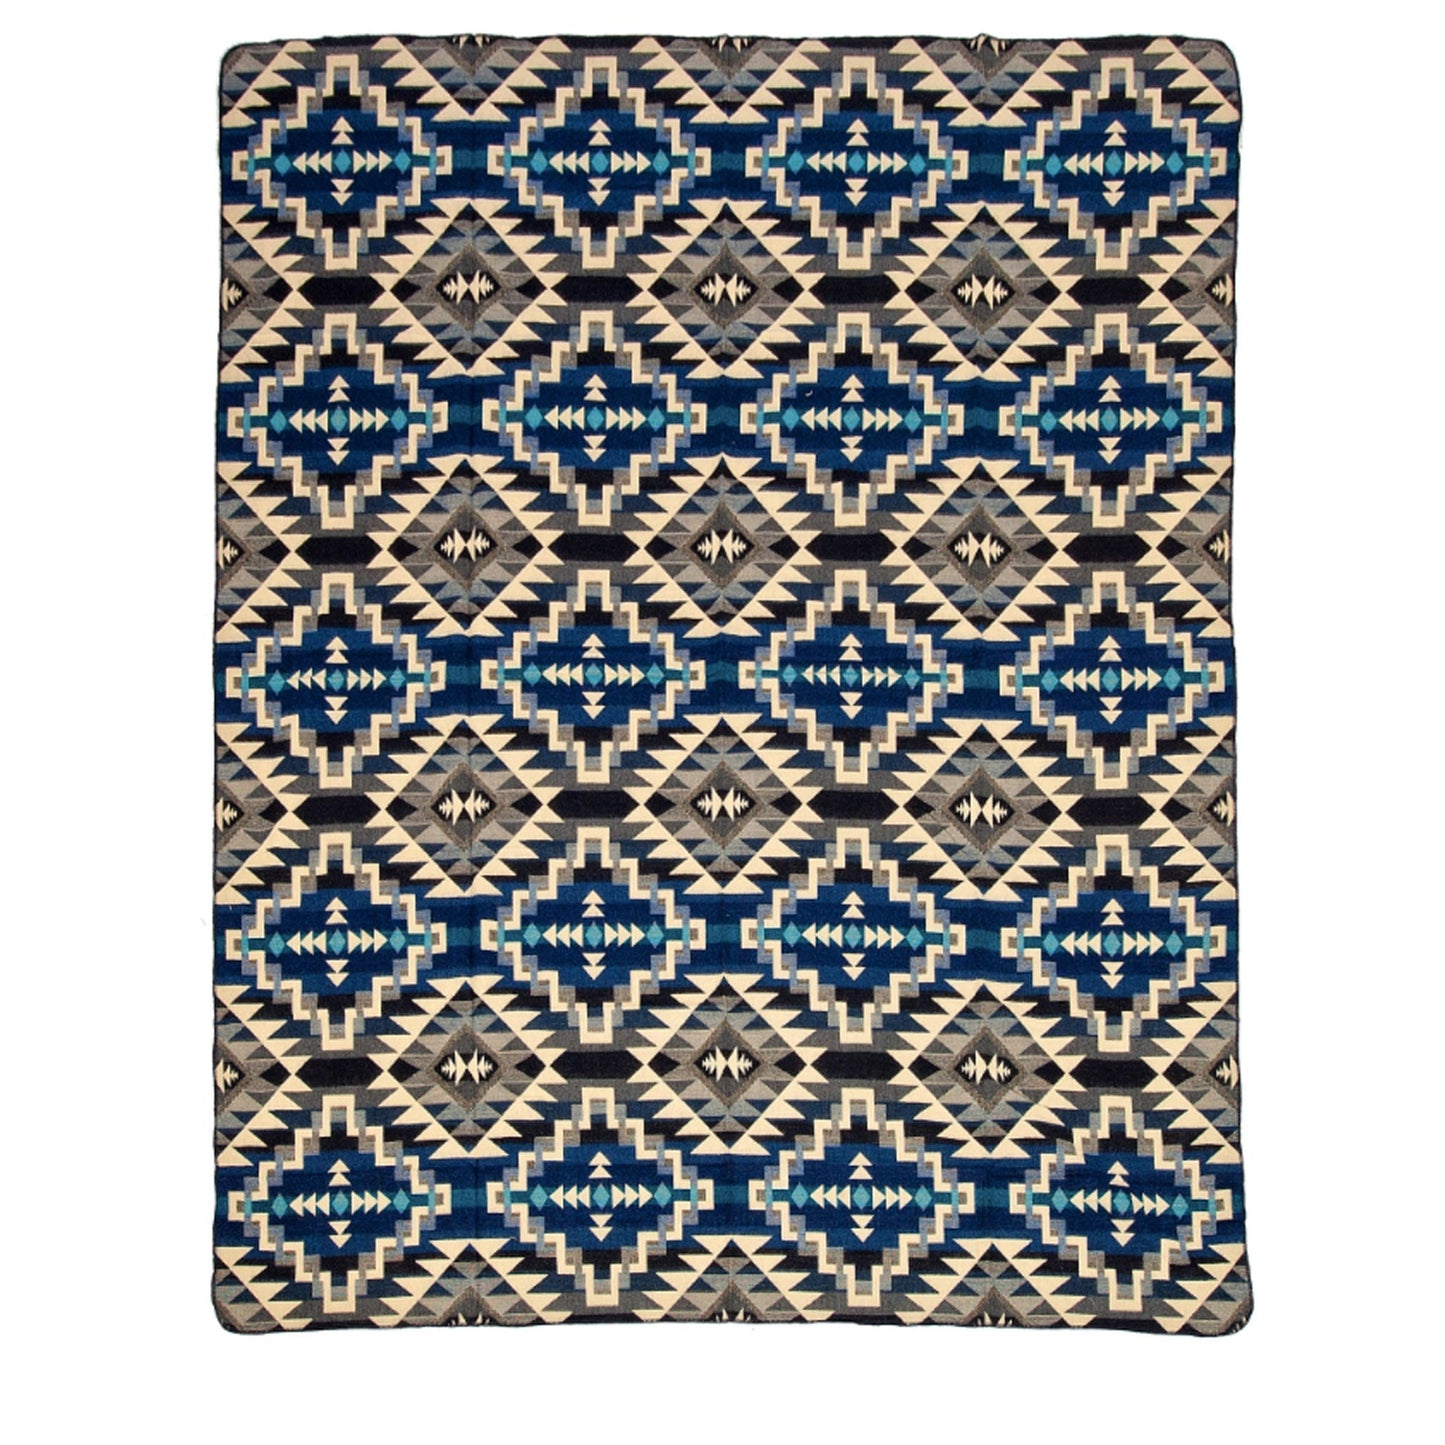 Authentische Chimborazo Decke aus Alpaka Wolle - 195 x 235 cm - Warmer, bunter Mix - Vandeley